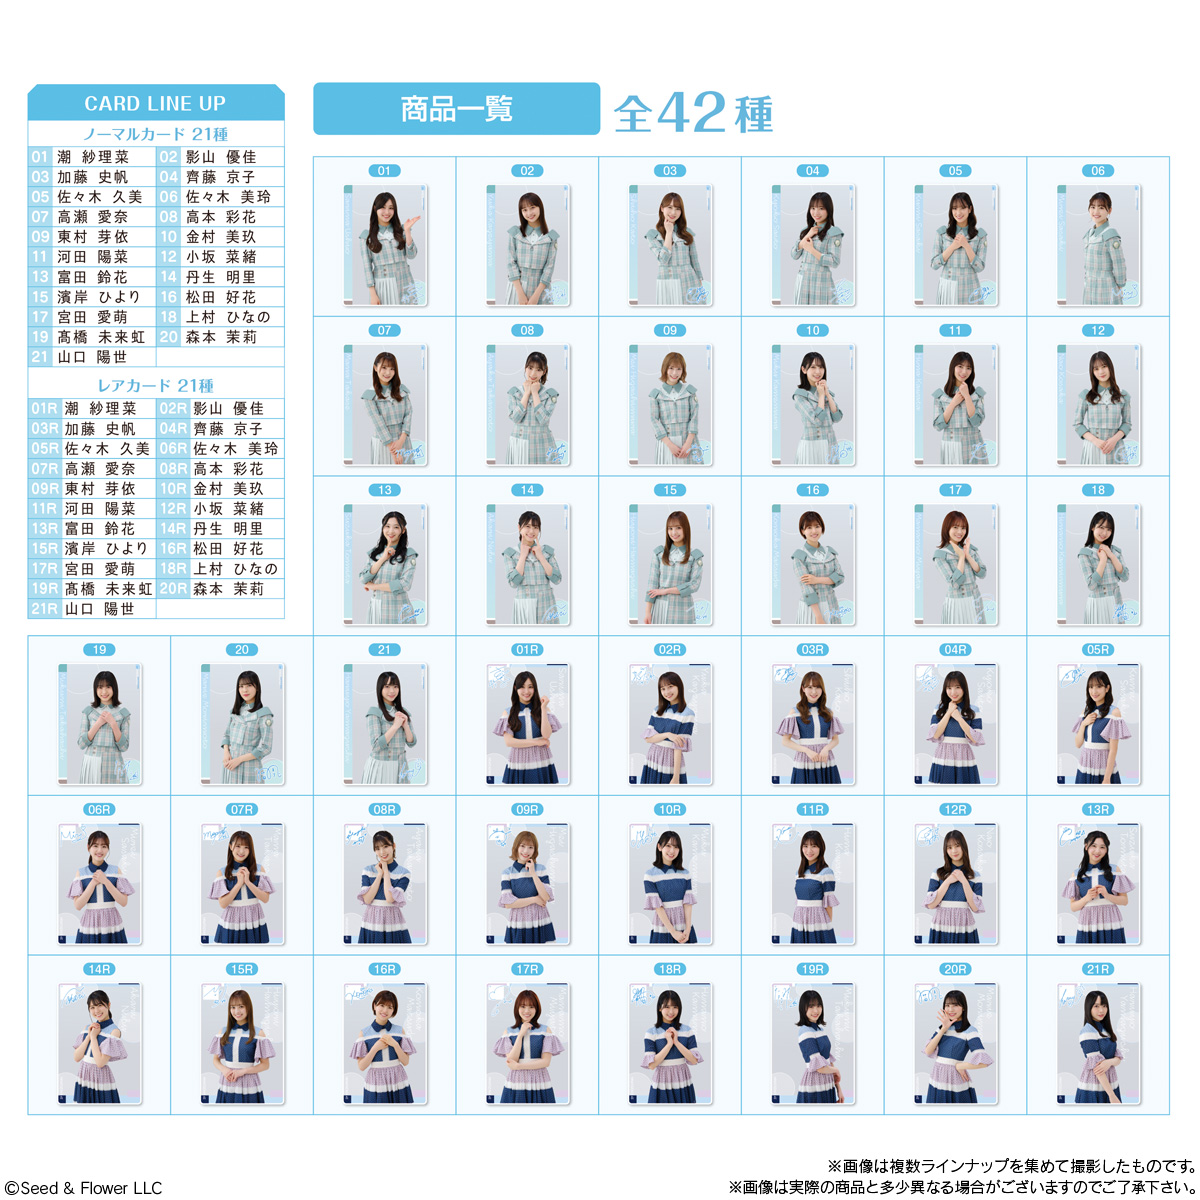 櫻坂46 ウエハース プラカード レアカード 全種類 全メンバー